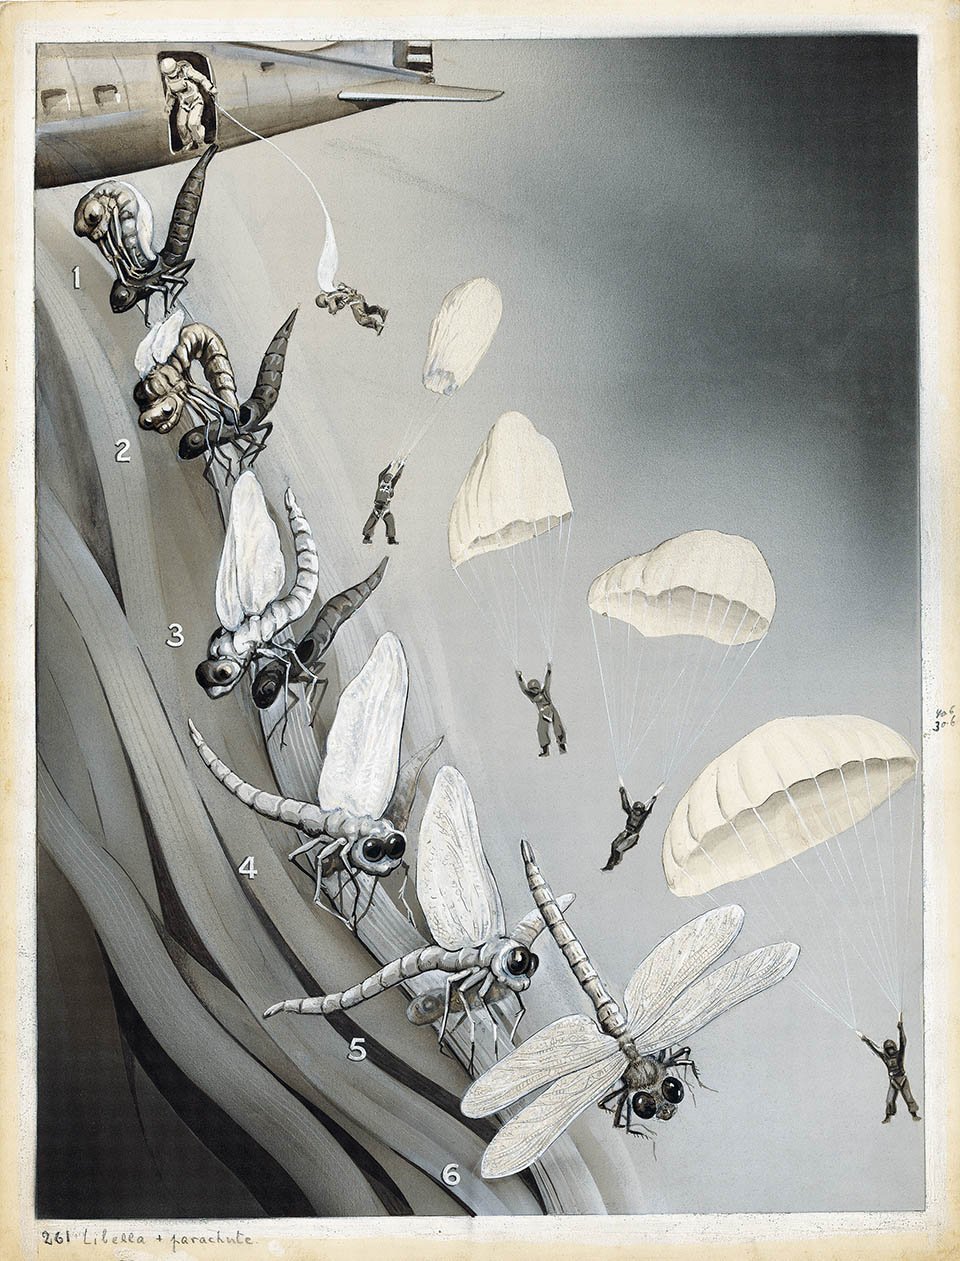 Die Entfaltung der Insektenflügel (The unfolding of insect wings) Das Buch der Natur II, Albert Müller, Rüschlikon/Zurich 1952, p. 100